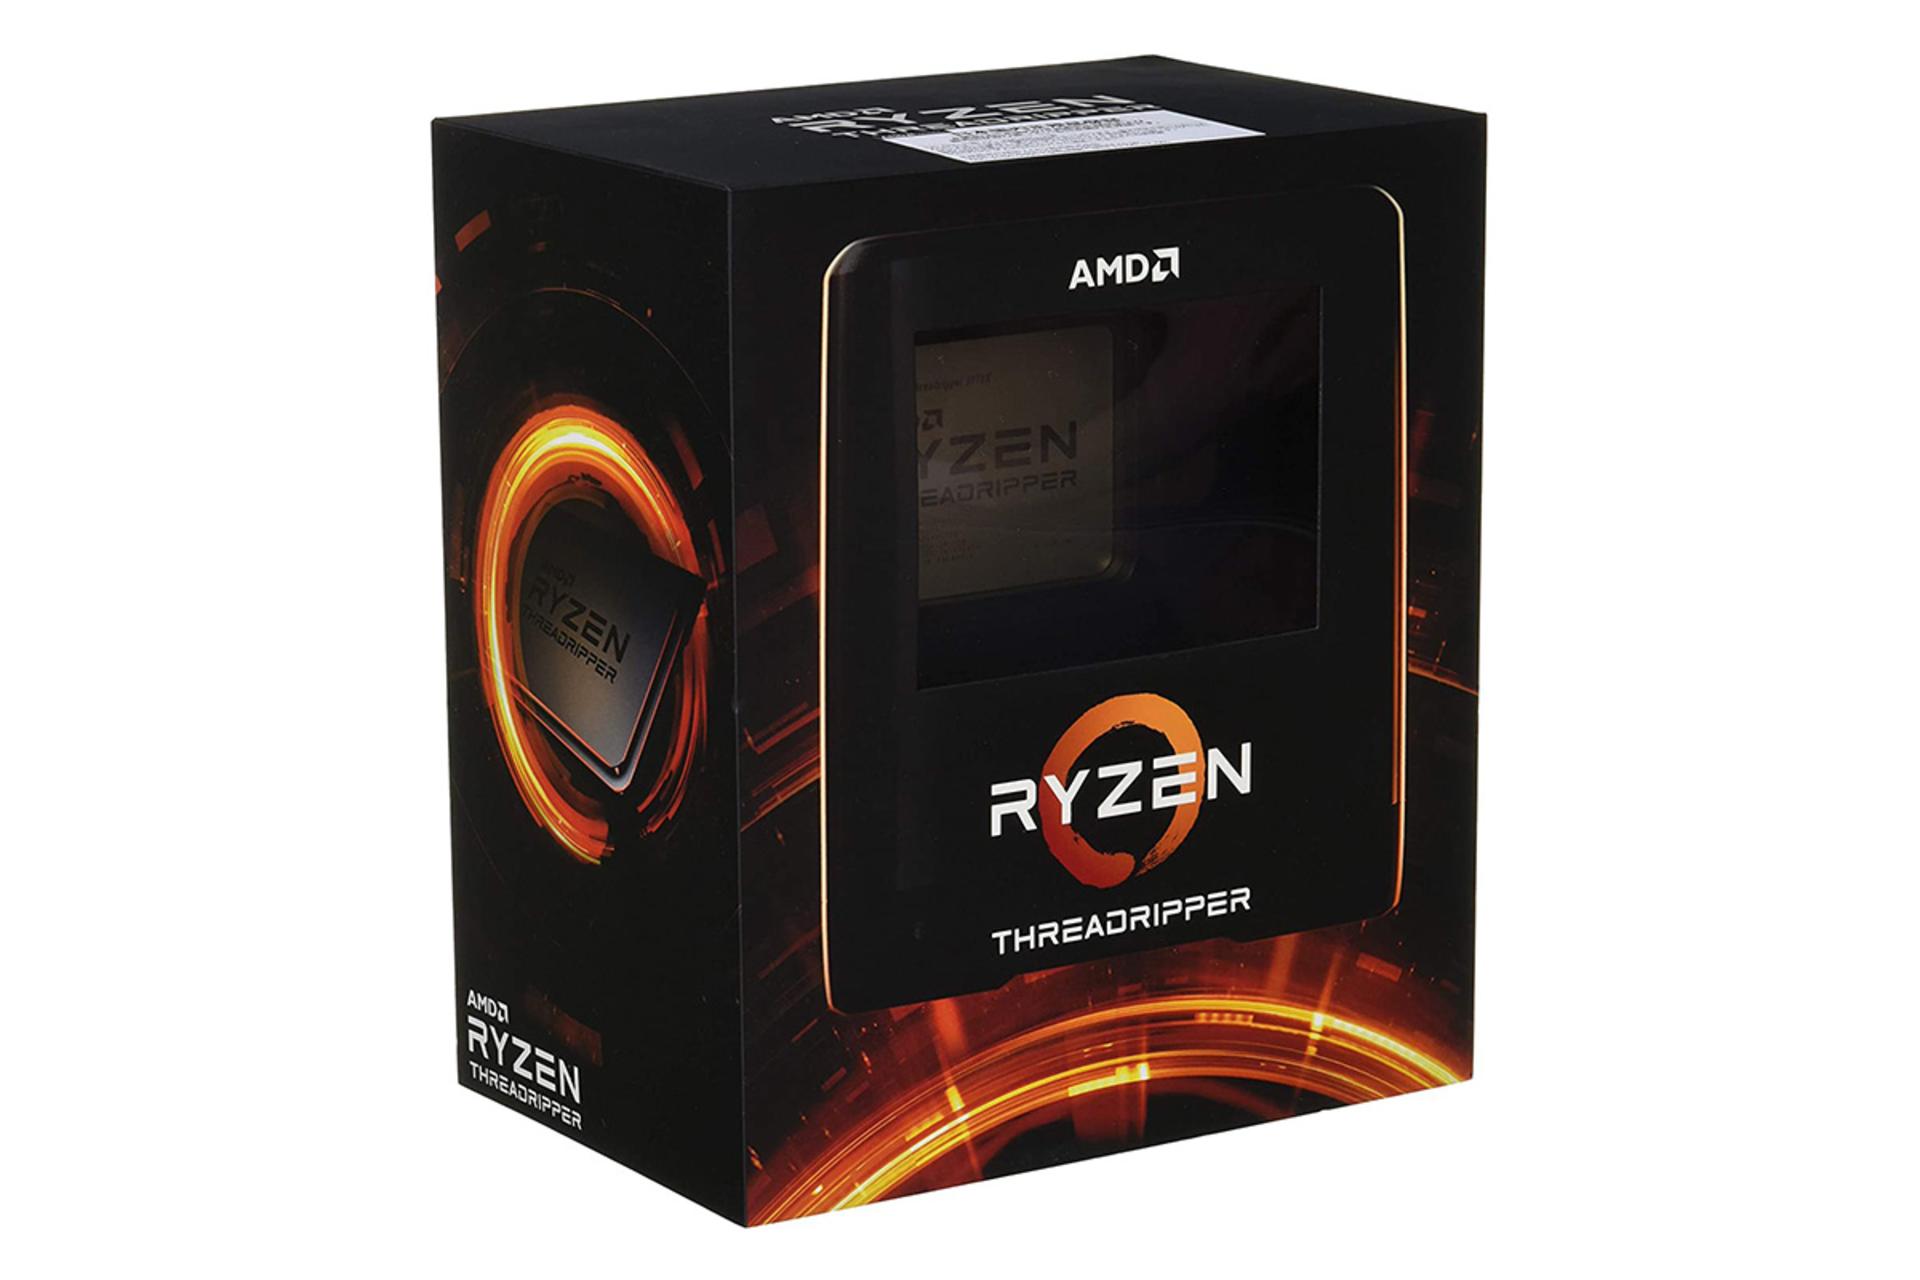 مرجع متخصصين ايران AMD Ryzen Threadripper 3970X / رايزن تردريپر